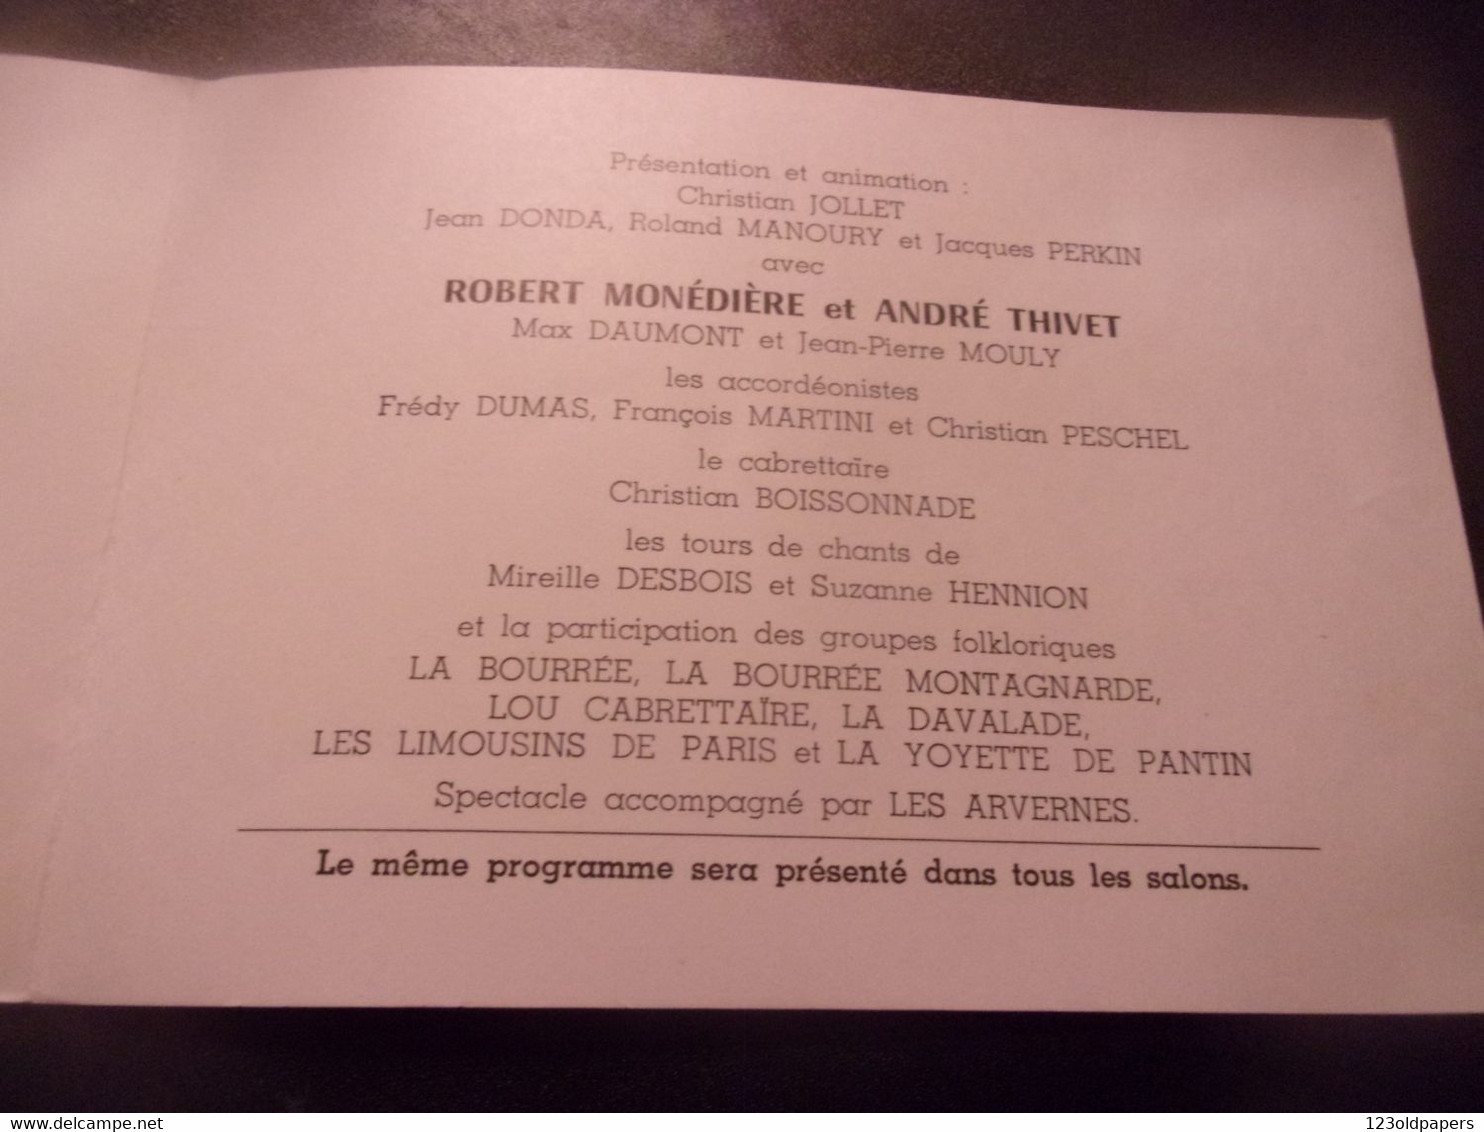 ♥️ JACQUES CHIRAC 1982 MAIRE PARIS INVITATION ACCORDEON ET FOLKLORE DU MASSIF CENTRAL FREDY DUMAS PESCHEL ... - Programmes